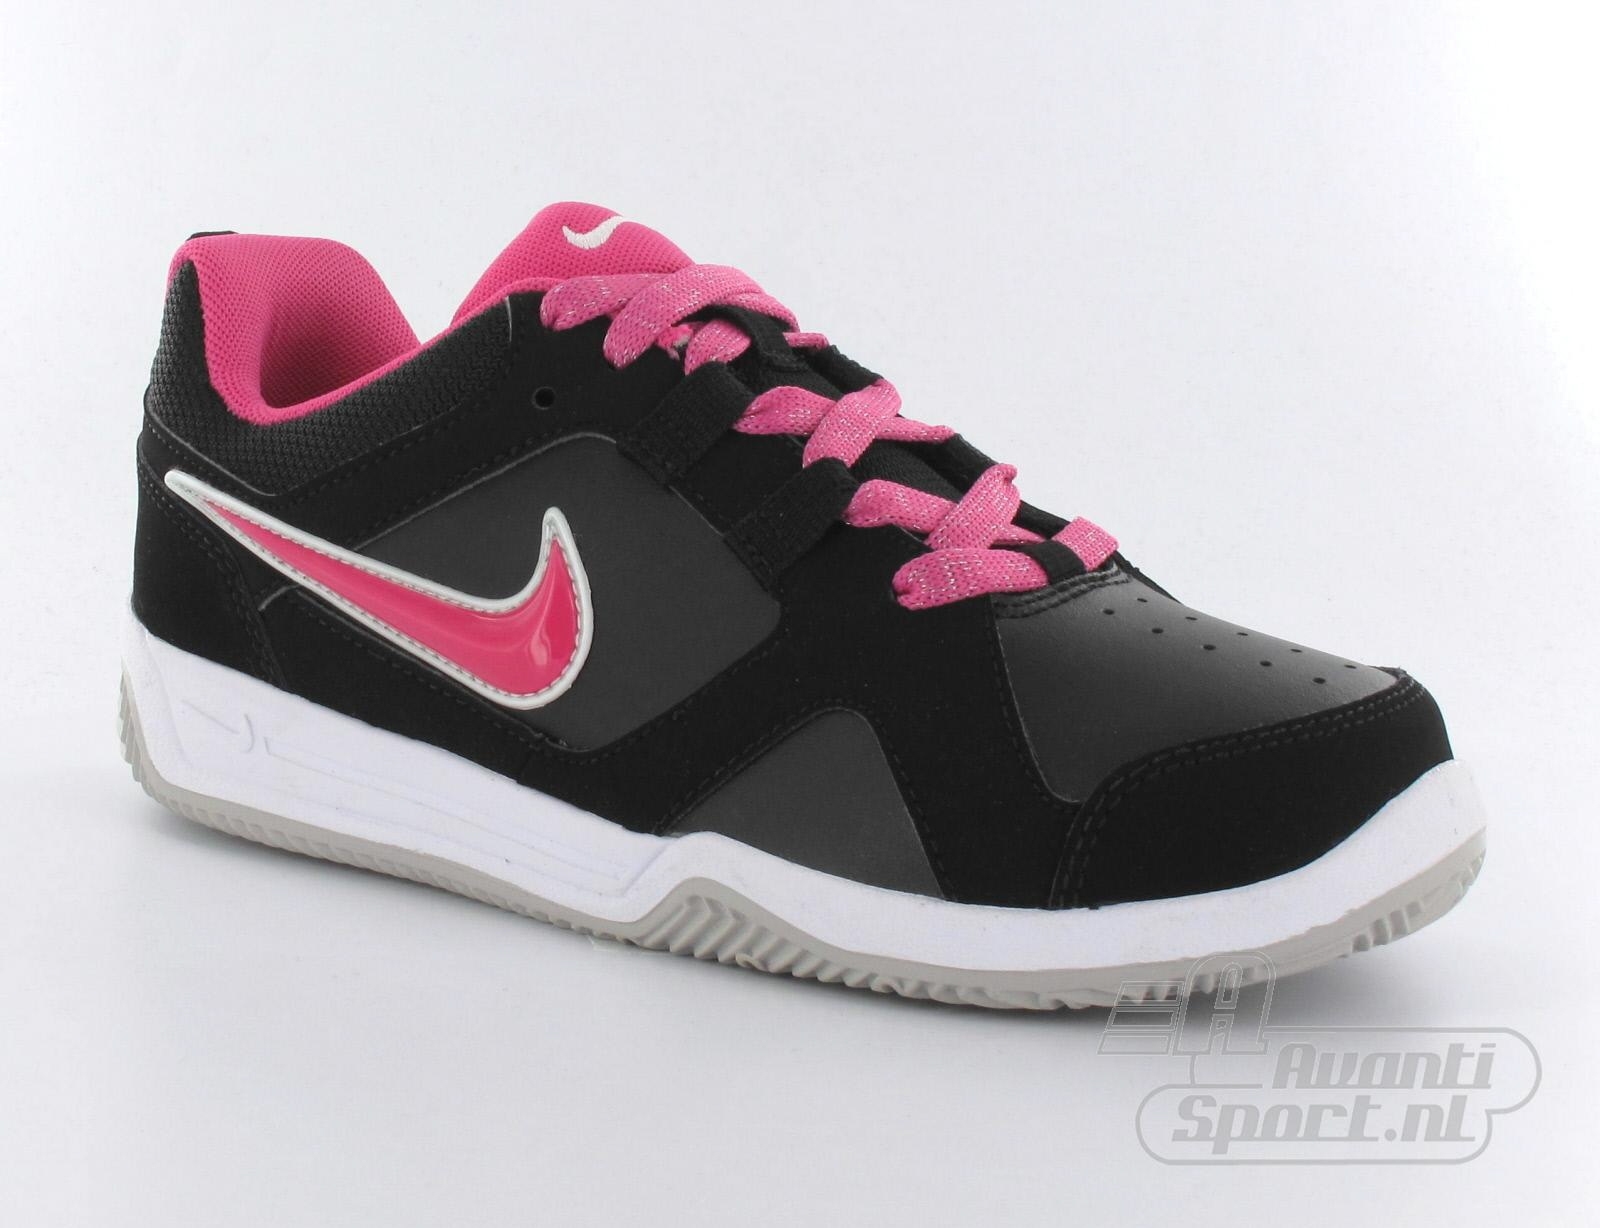 Avantisport - Nike - Lykin 11 (Gs) - Sneakers